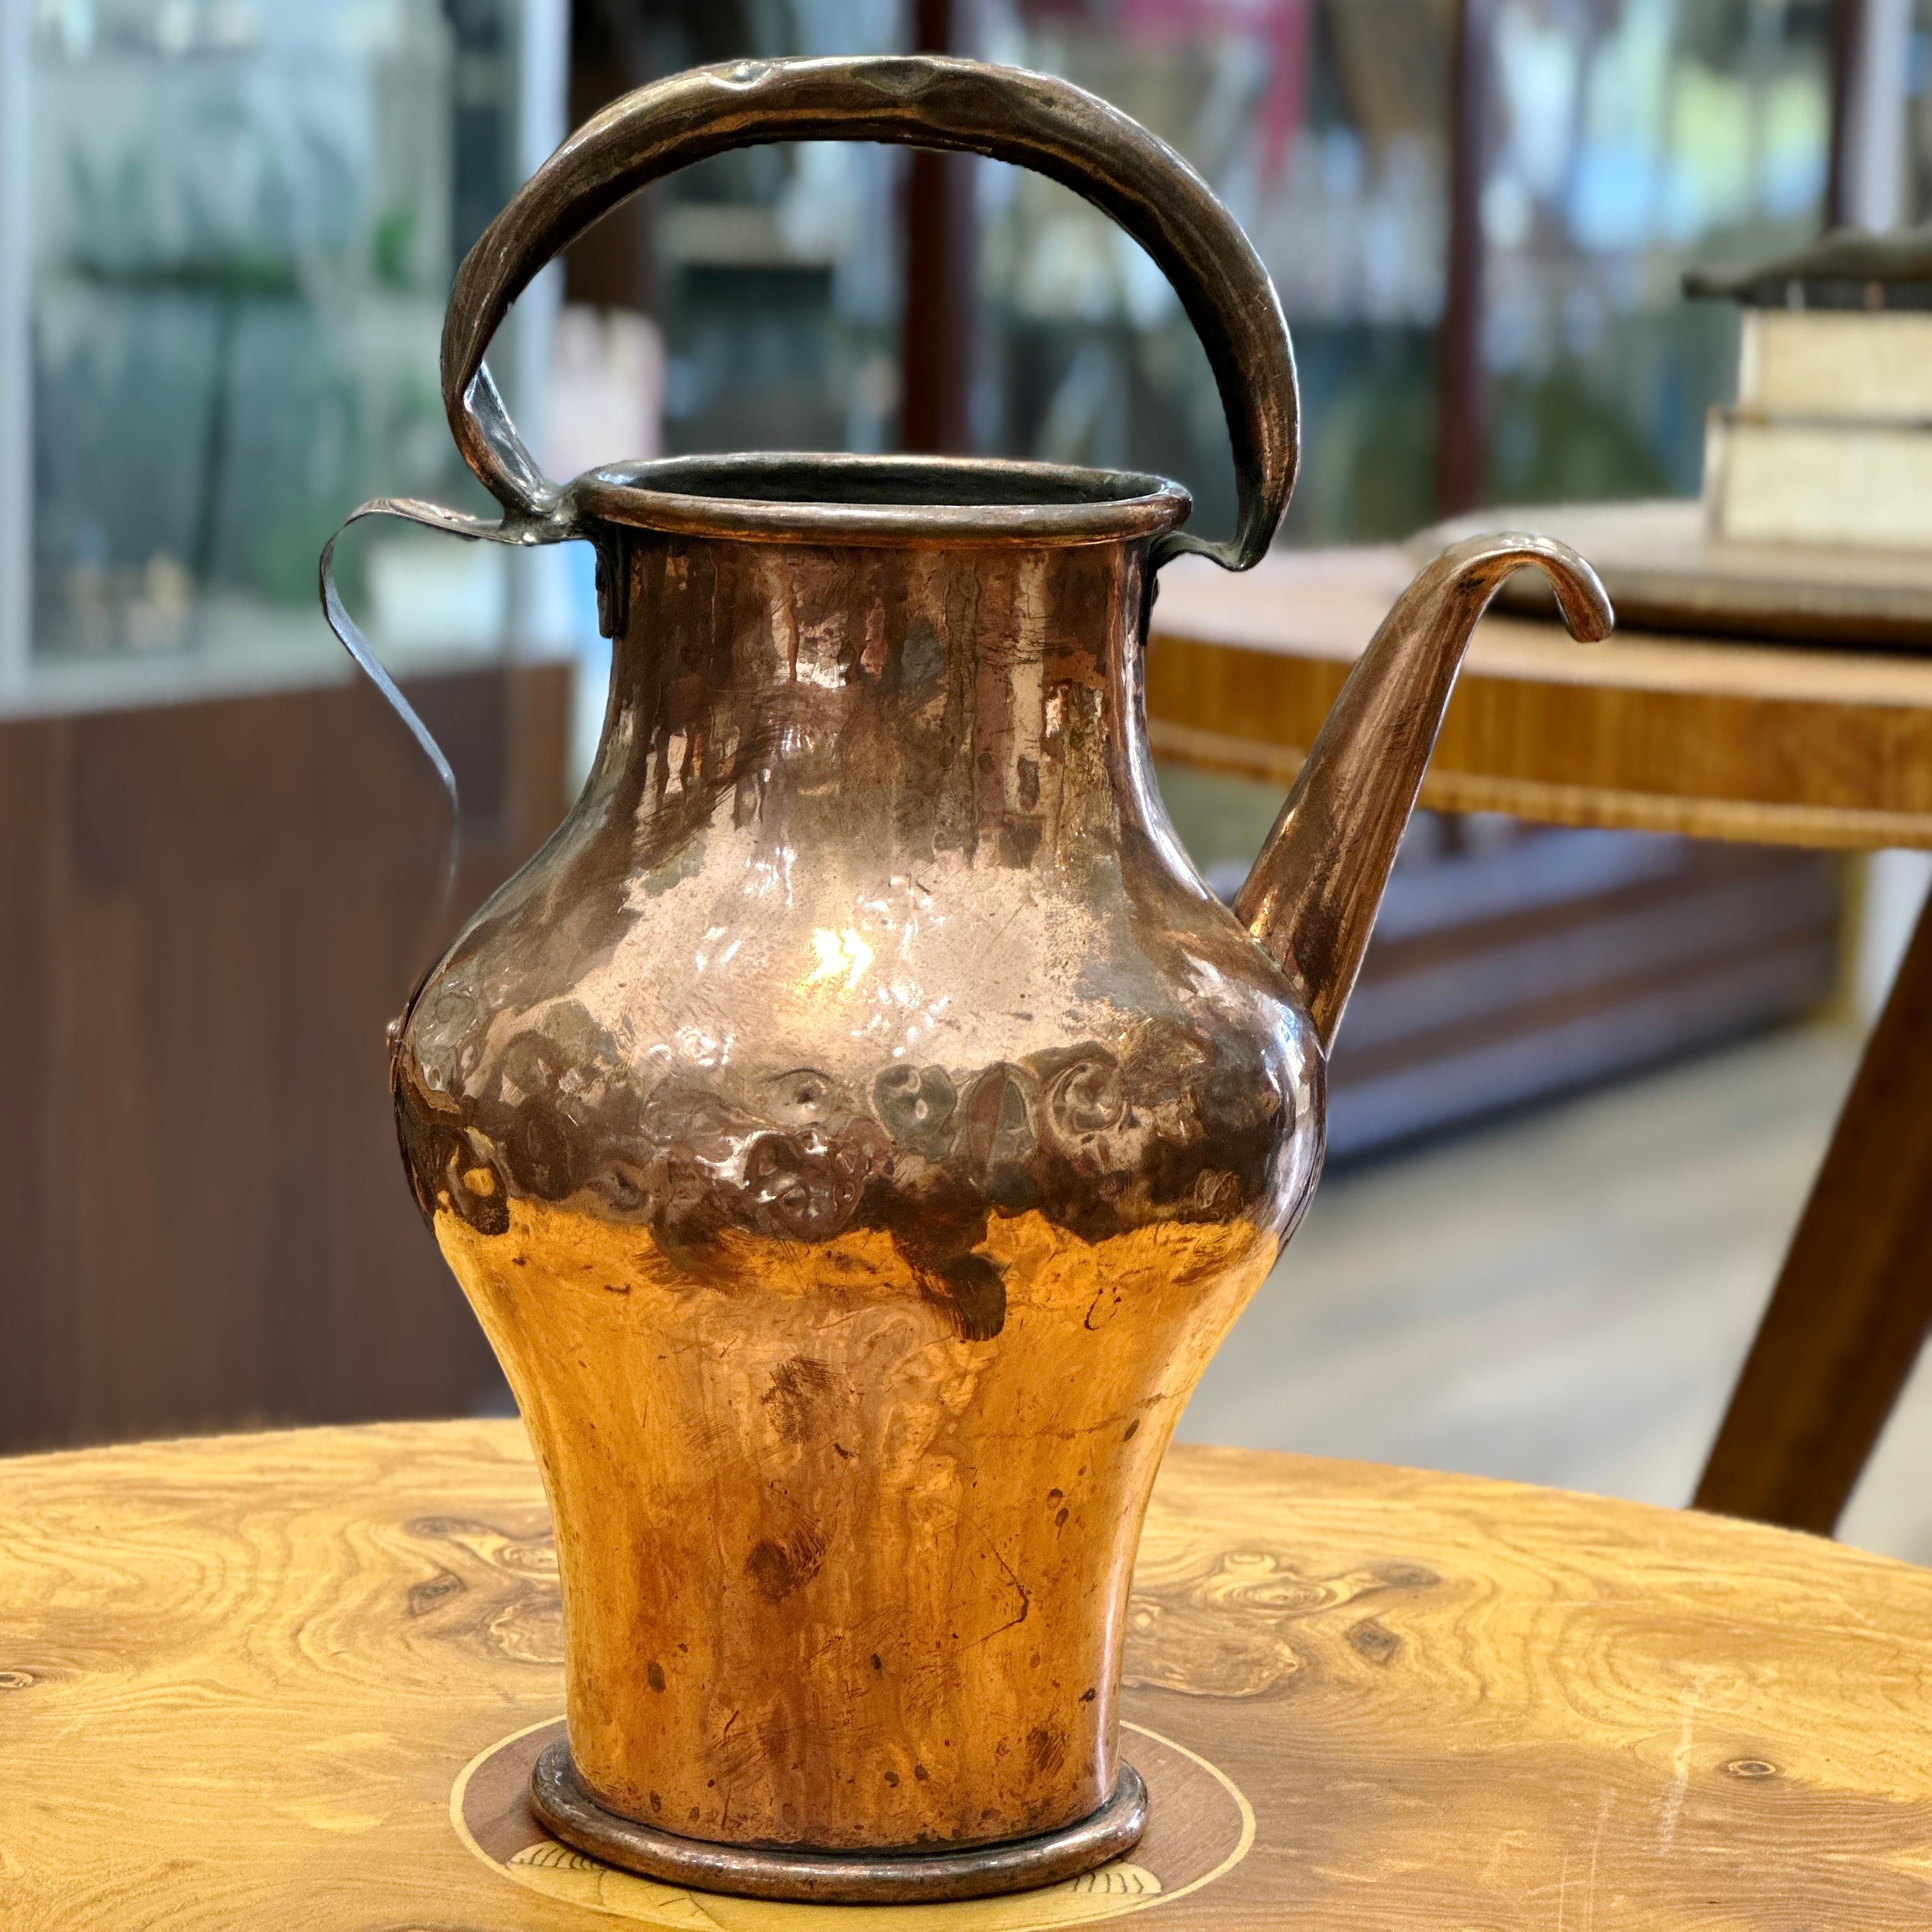 Hier ist eine schöne antike Französisch Copper Watering Can. Dieses Stück verfügt über einen oberen und einen seitlichen Griff und hat eine wunderbare, im Laufe der Zeit abgenutzte Patina. Die Gießkanne ist wasserdicht und kann für den vorgesehenen